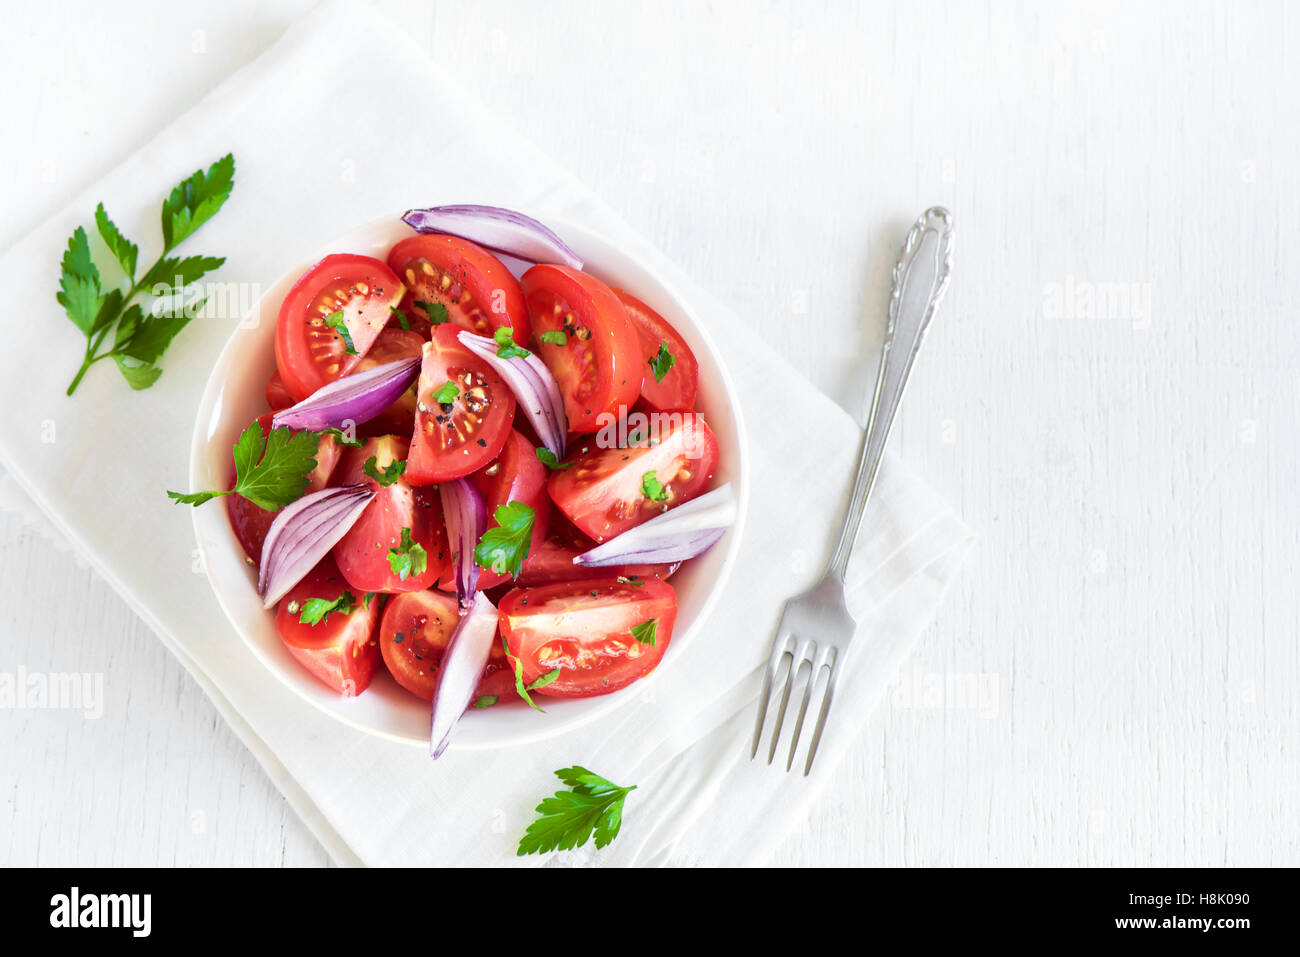 Tomatensalat mit Zwiebeln, Petersilie und Pfeffer in Schüssel - gesunde vegetarische vegane Lebensmittel Vorspeise Stockfoto